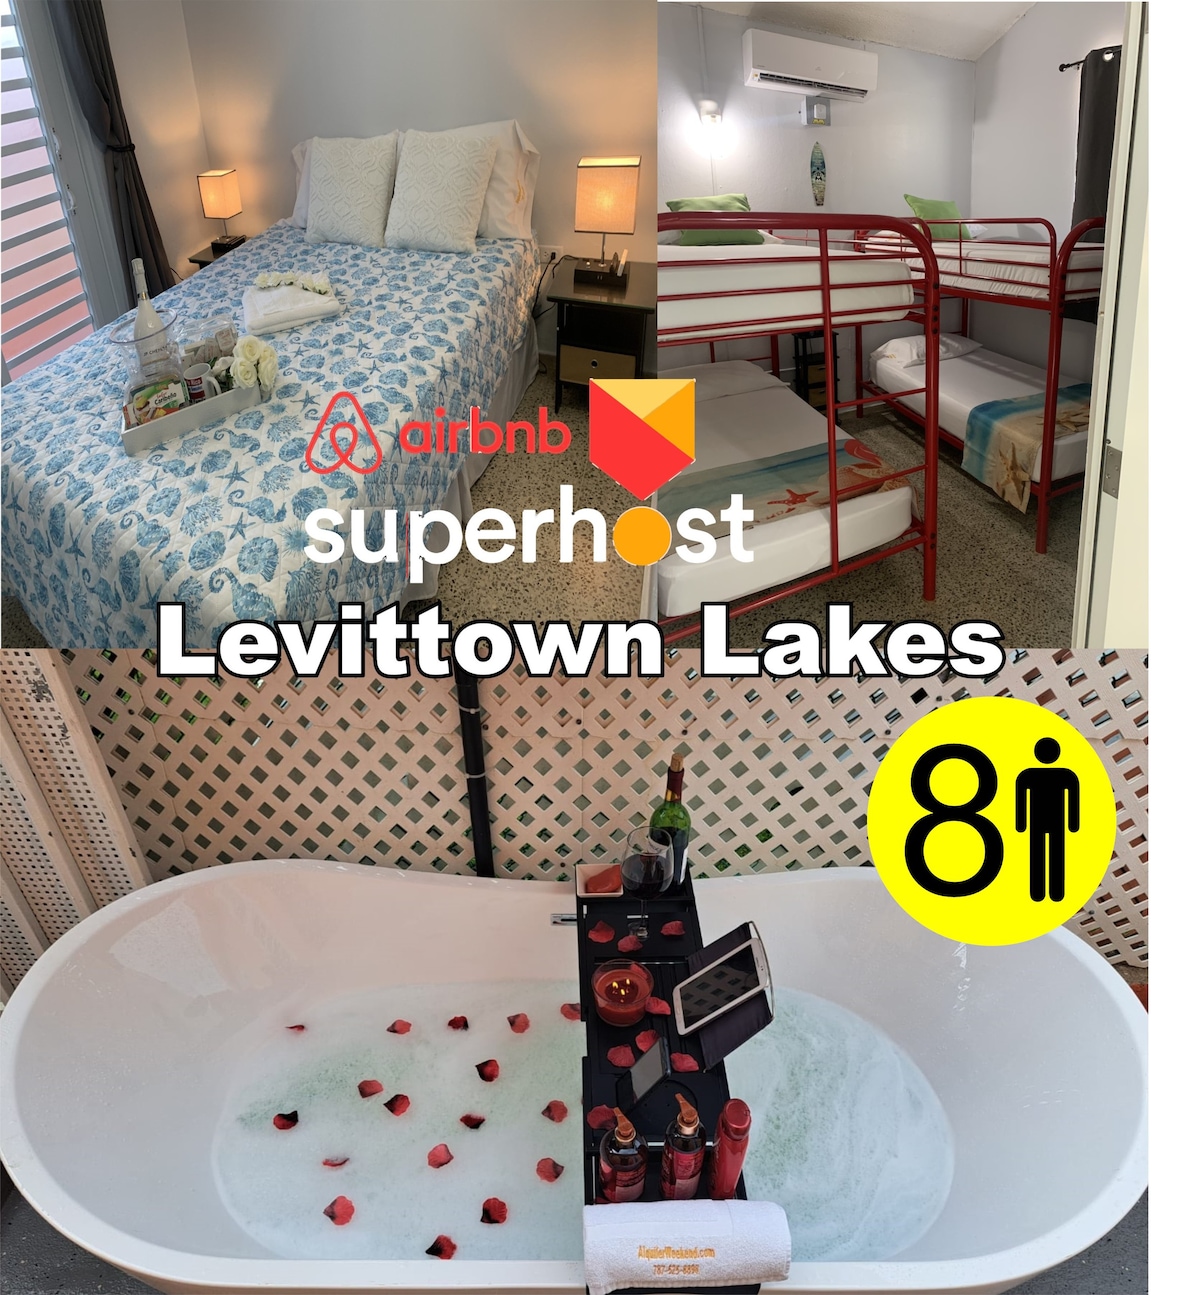 Levittown Lakes